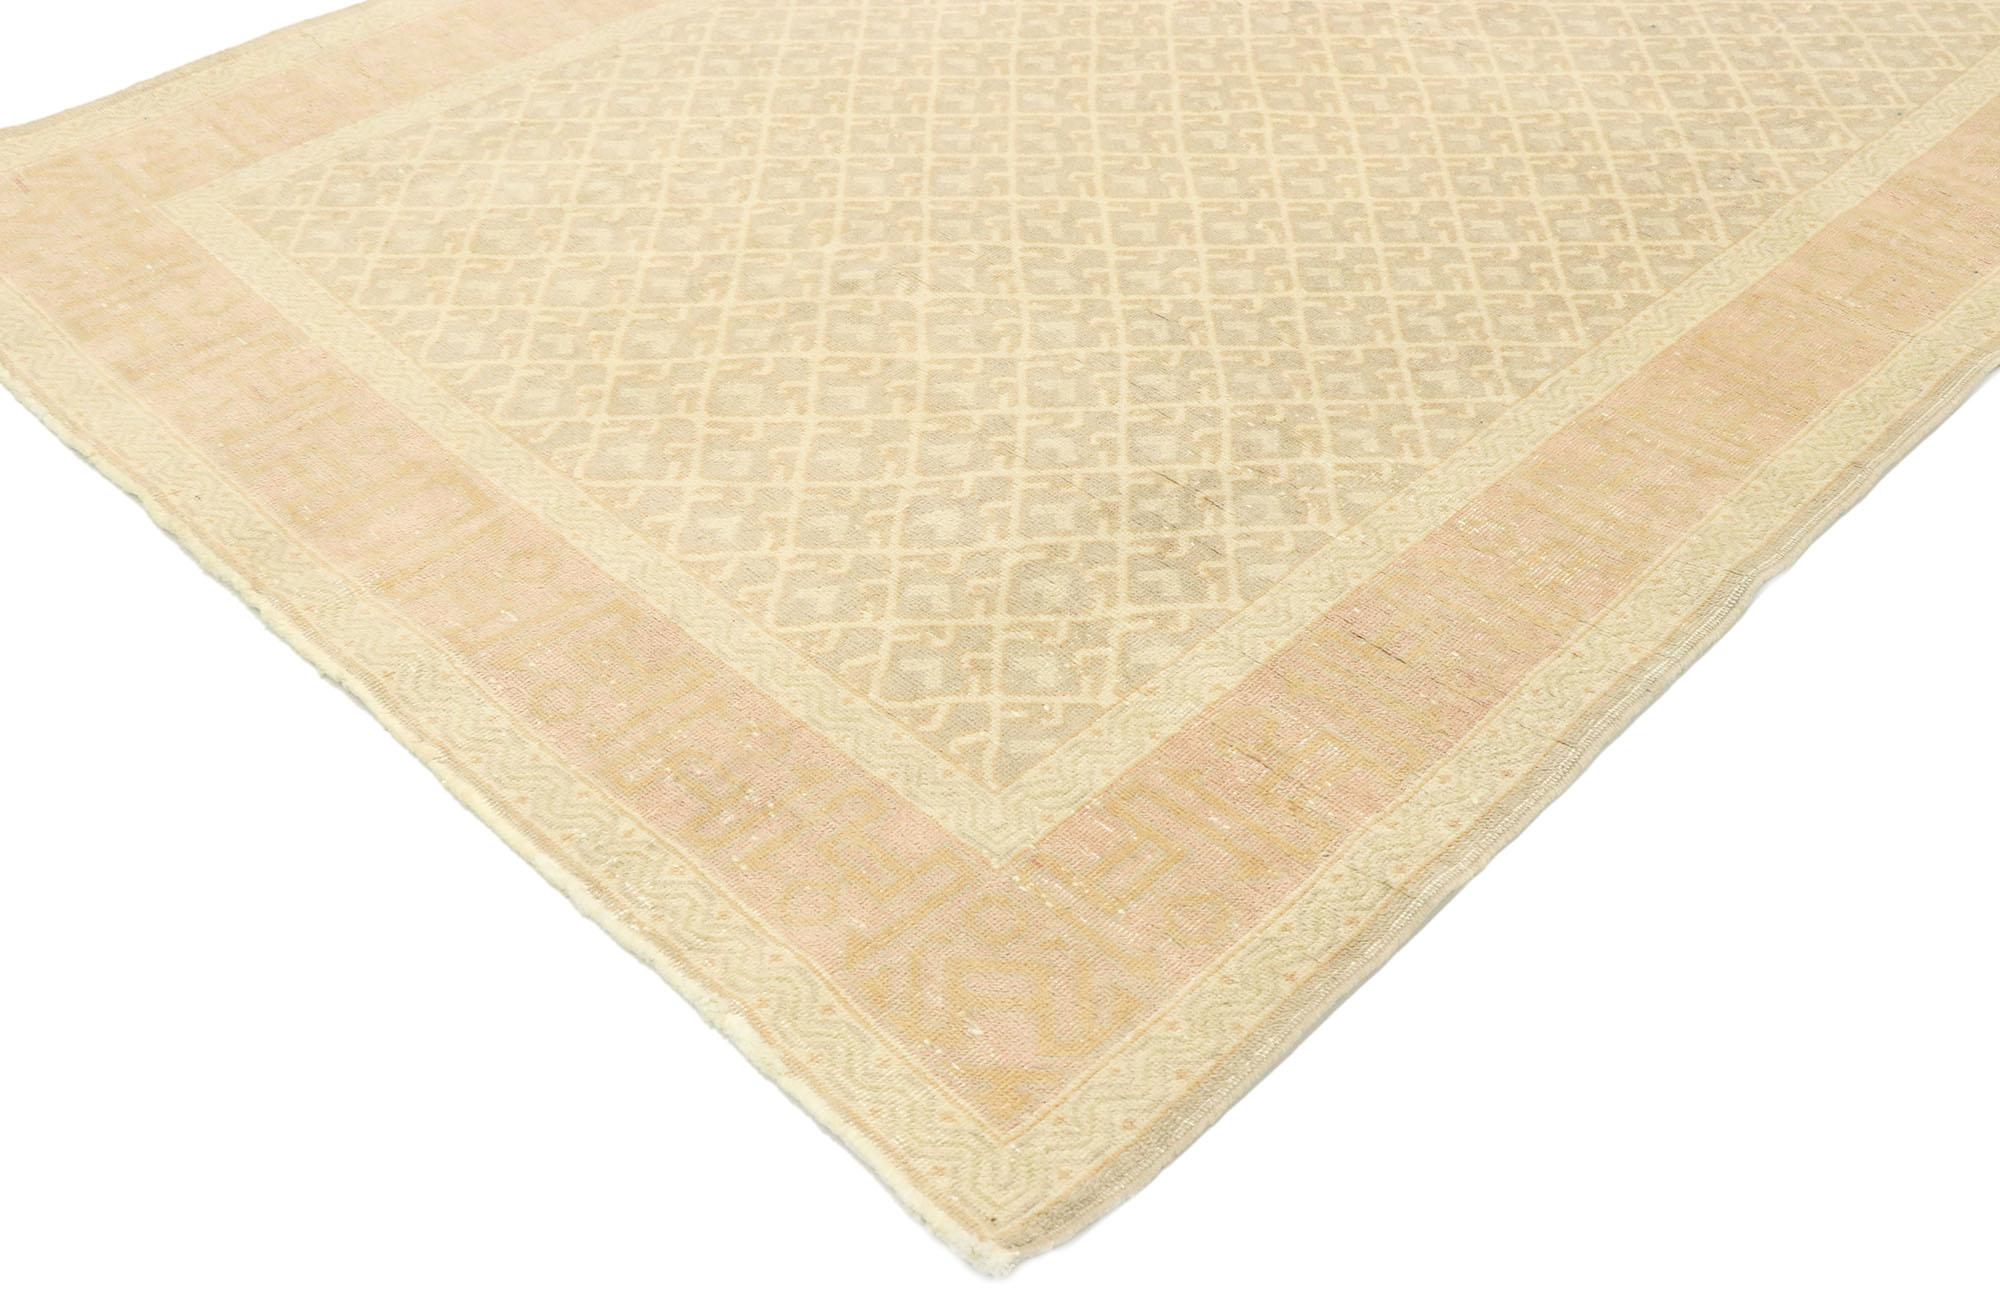 53072 tapis vintage turc Sivas de style romantique géorgien. Avec sa symétrie bien équilibrée et ses teintes en harmonie, ce tapis Sivas turc vintage en laine nouée à la main incarne à merveille un style géorgien romantique. Cette composition